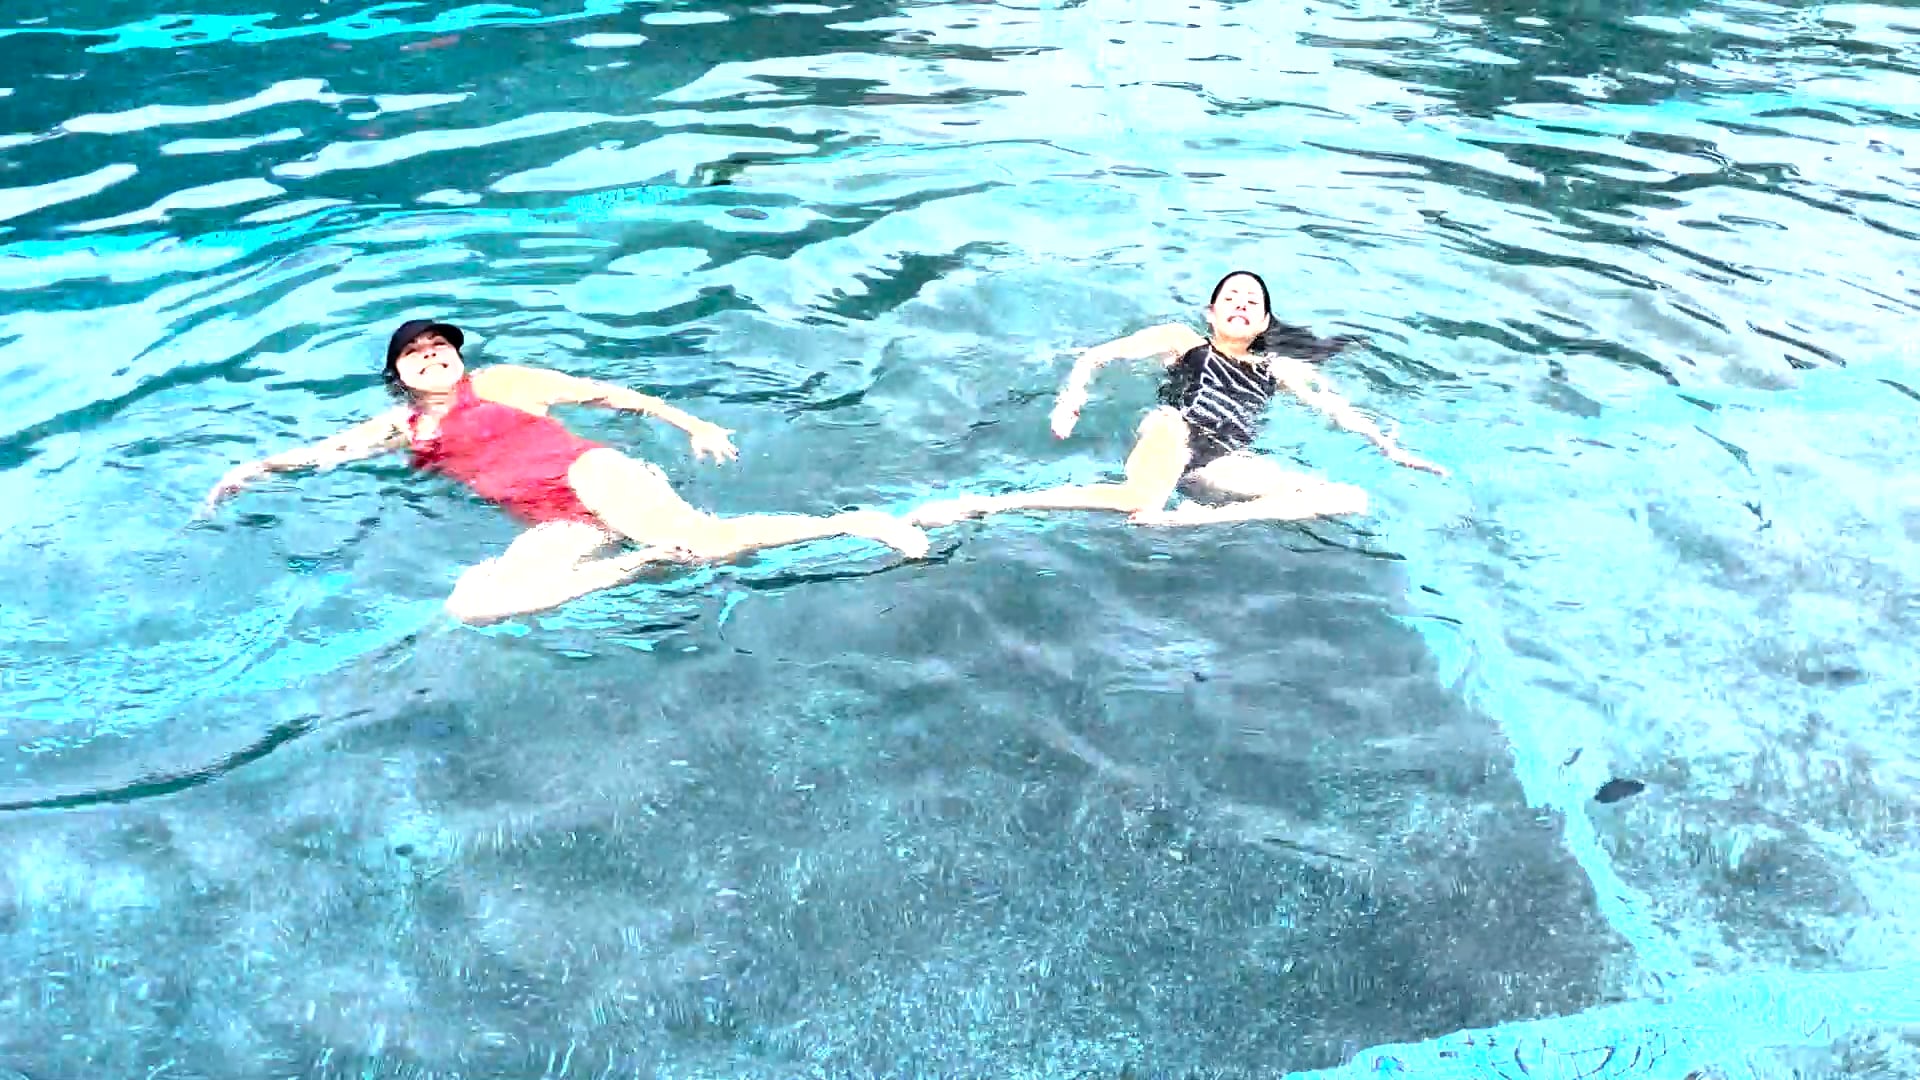 Synchronized Swimming with Katie Killebrew